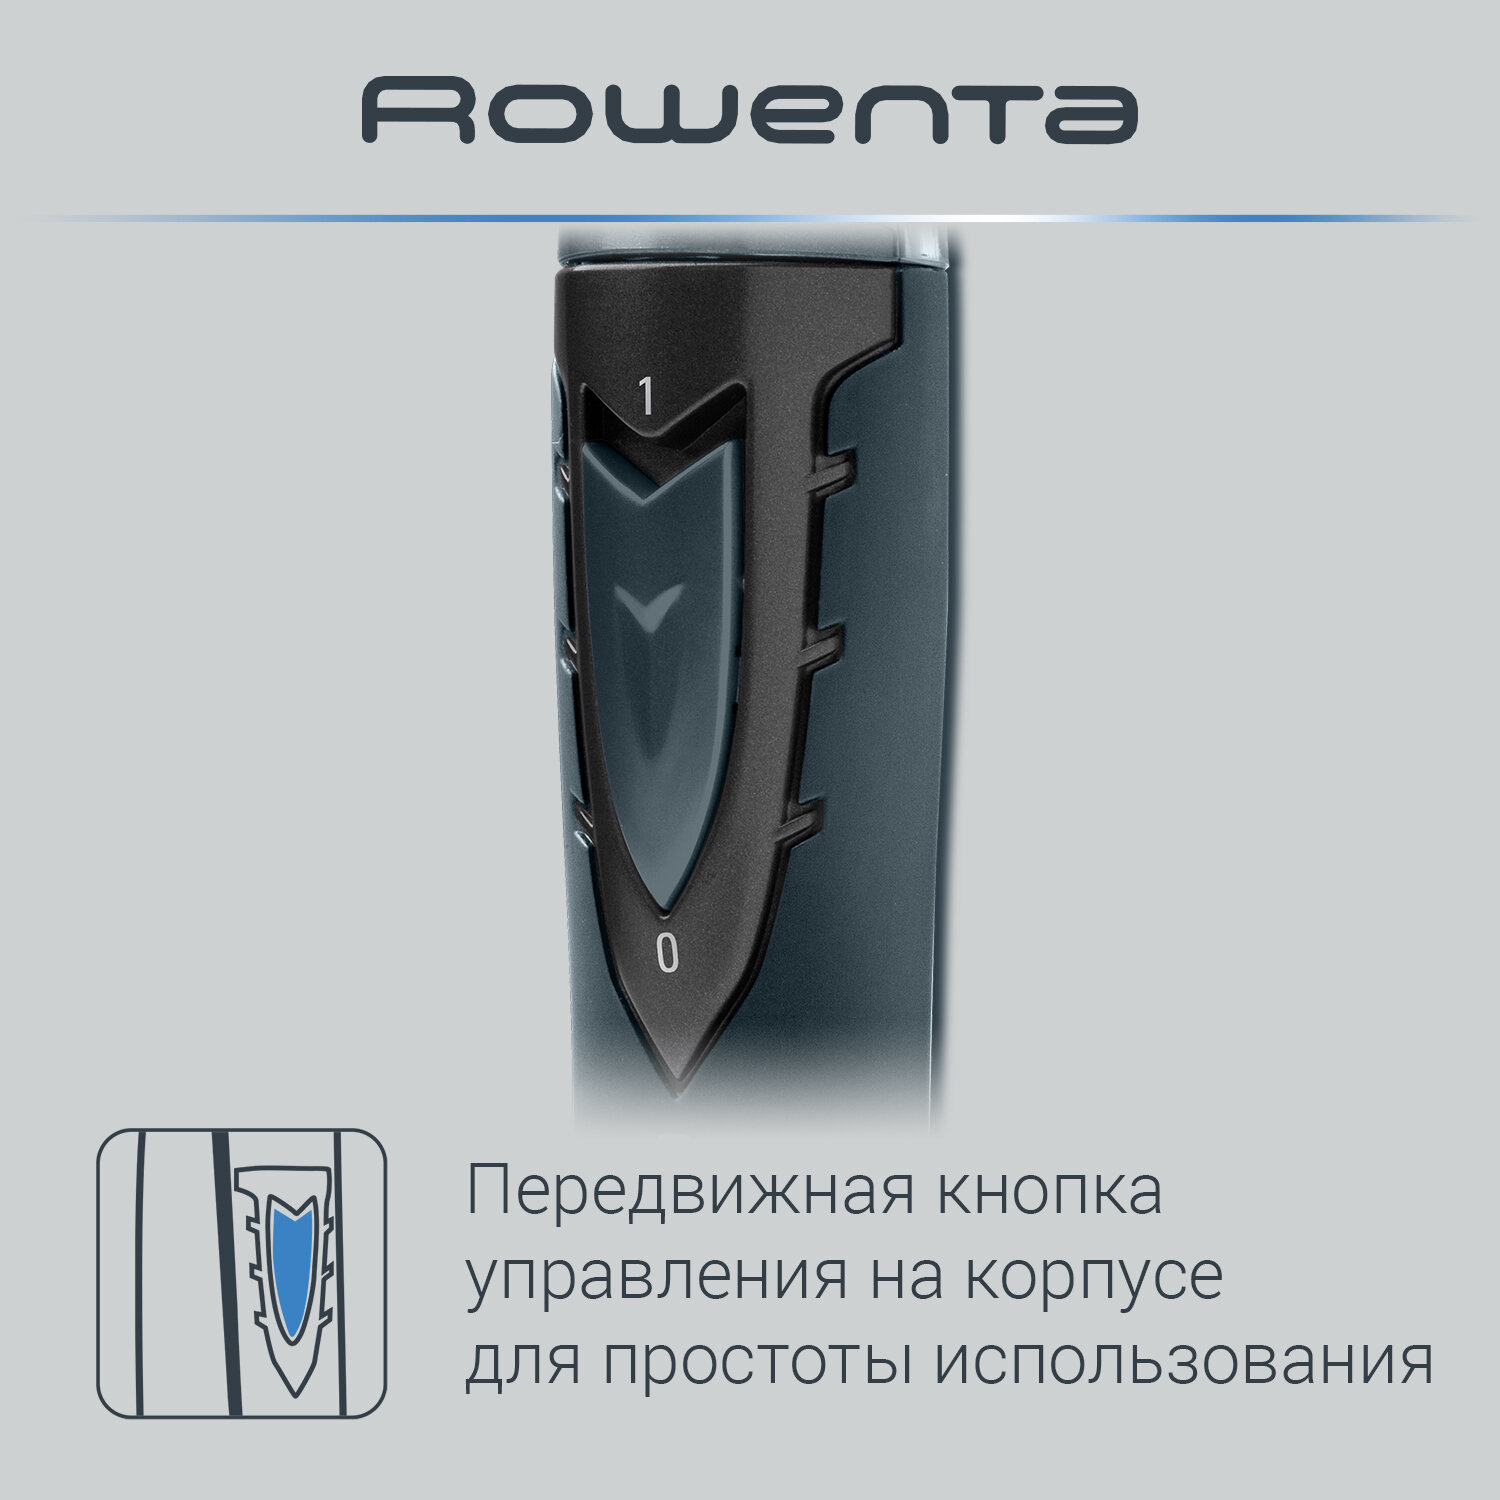 Триммер для носа и ушей Rowenta Cpecialist TN3011F0, синий, материал лезвия нержавеющая сталь, влажная очистка, защитная крышка